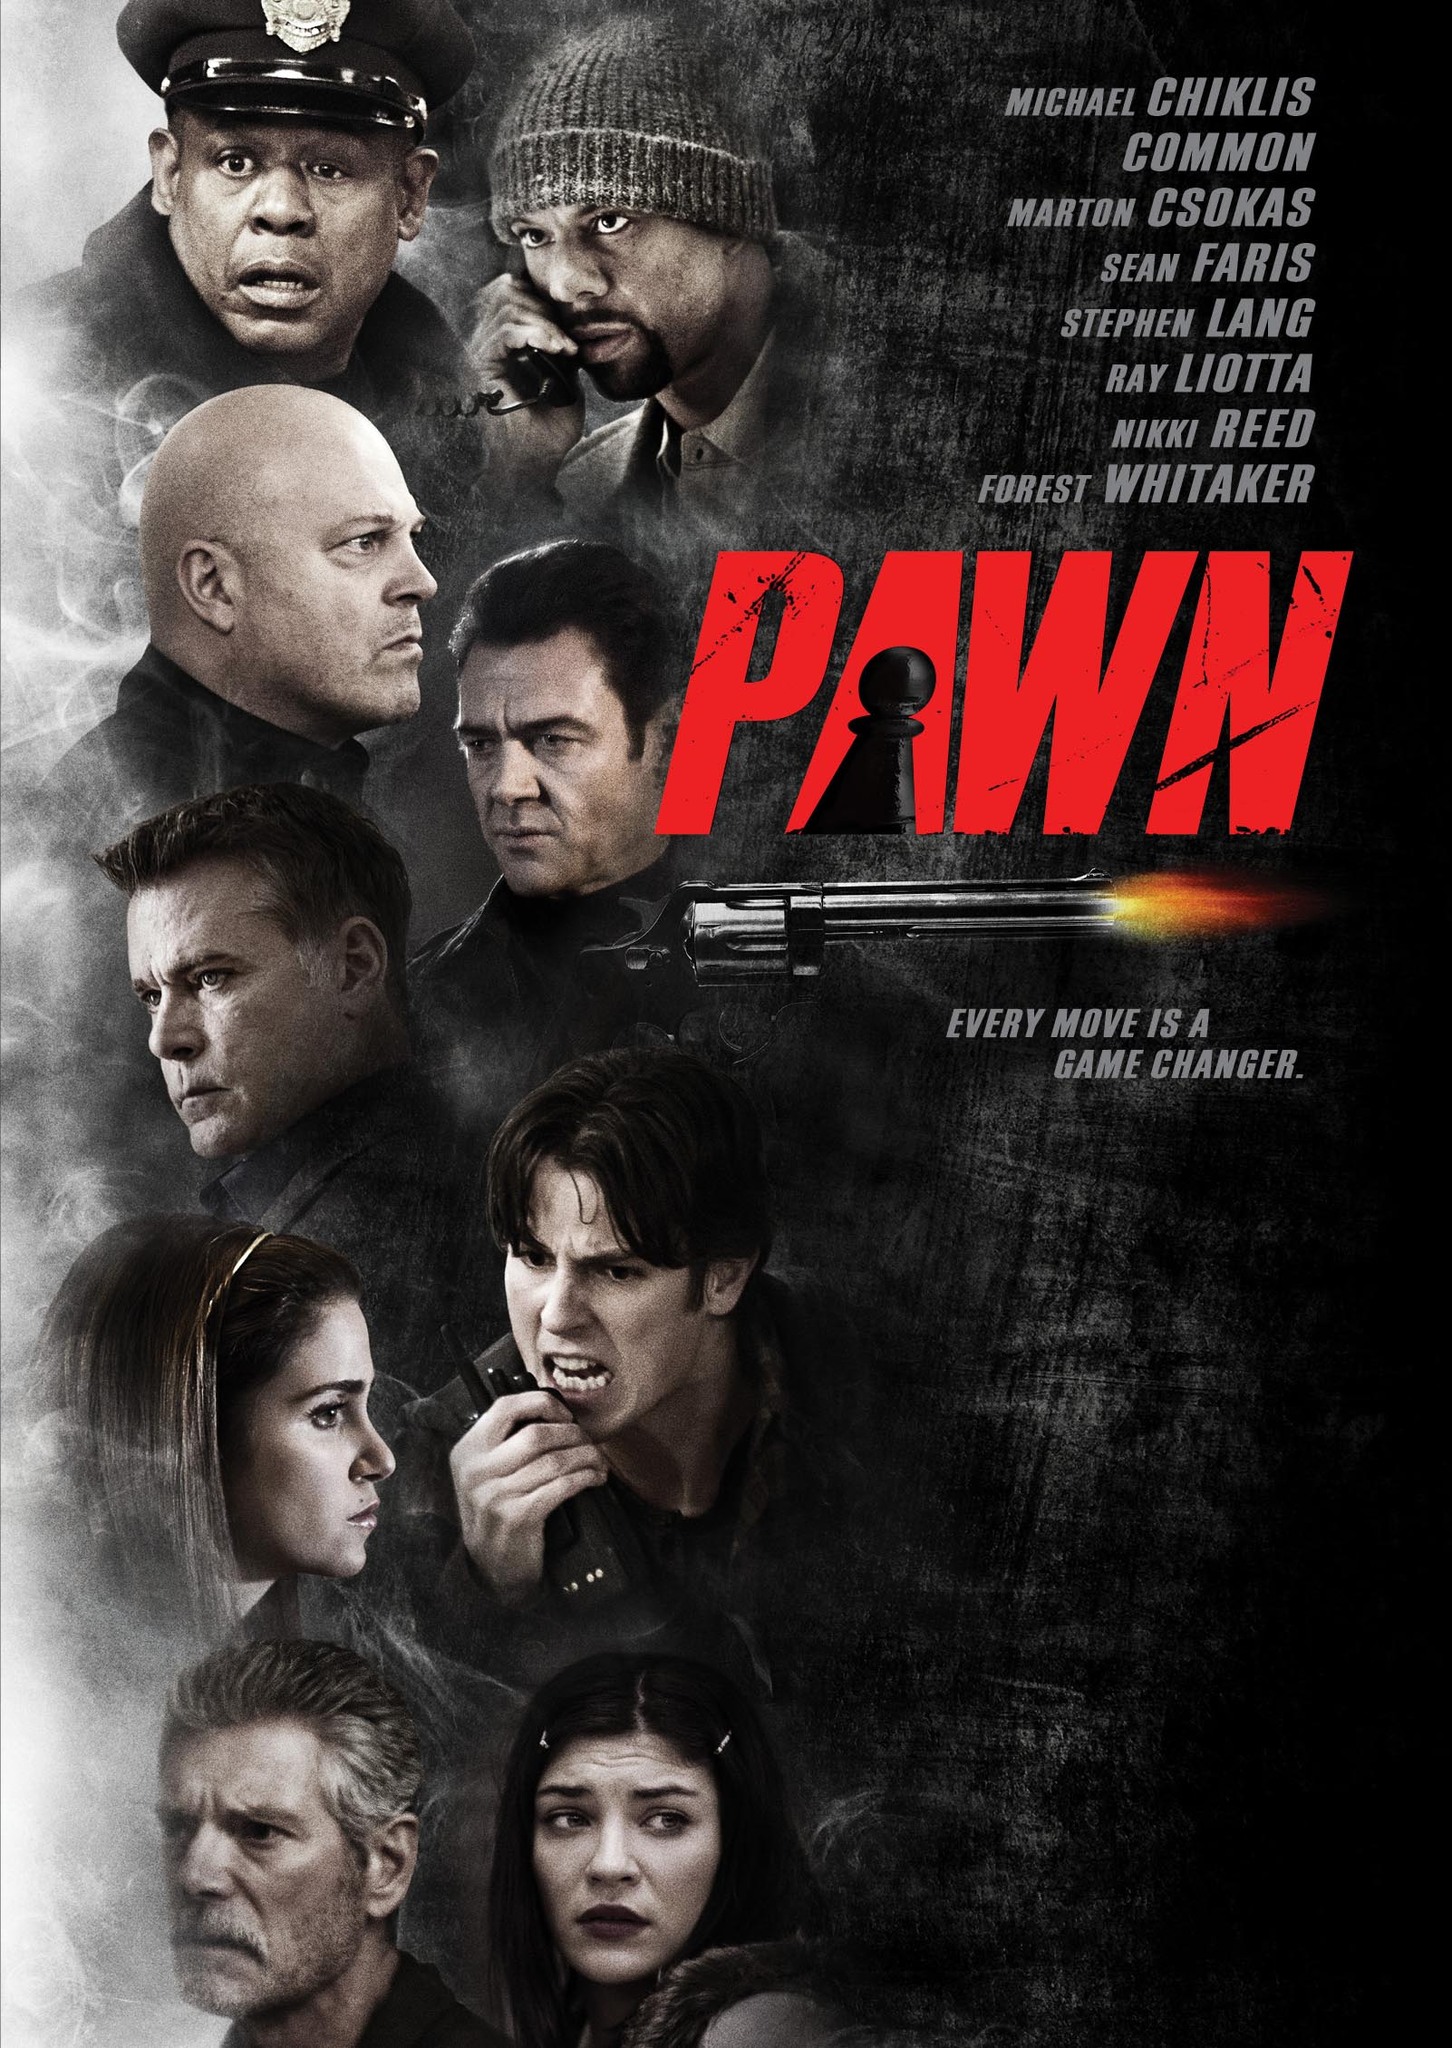 Pawn (2013) รุกฆาตคนปล้นคน Forest Whitaker